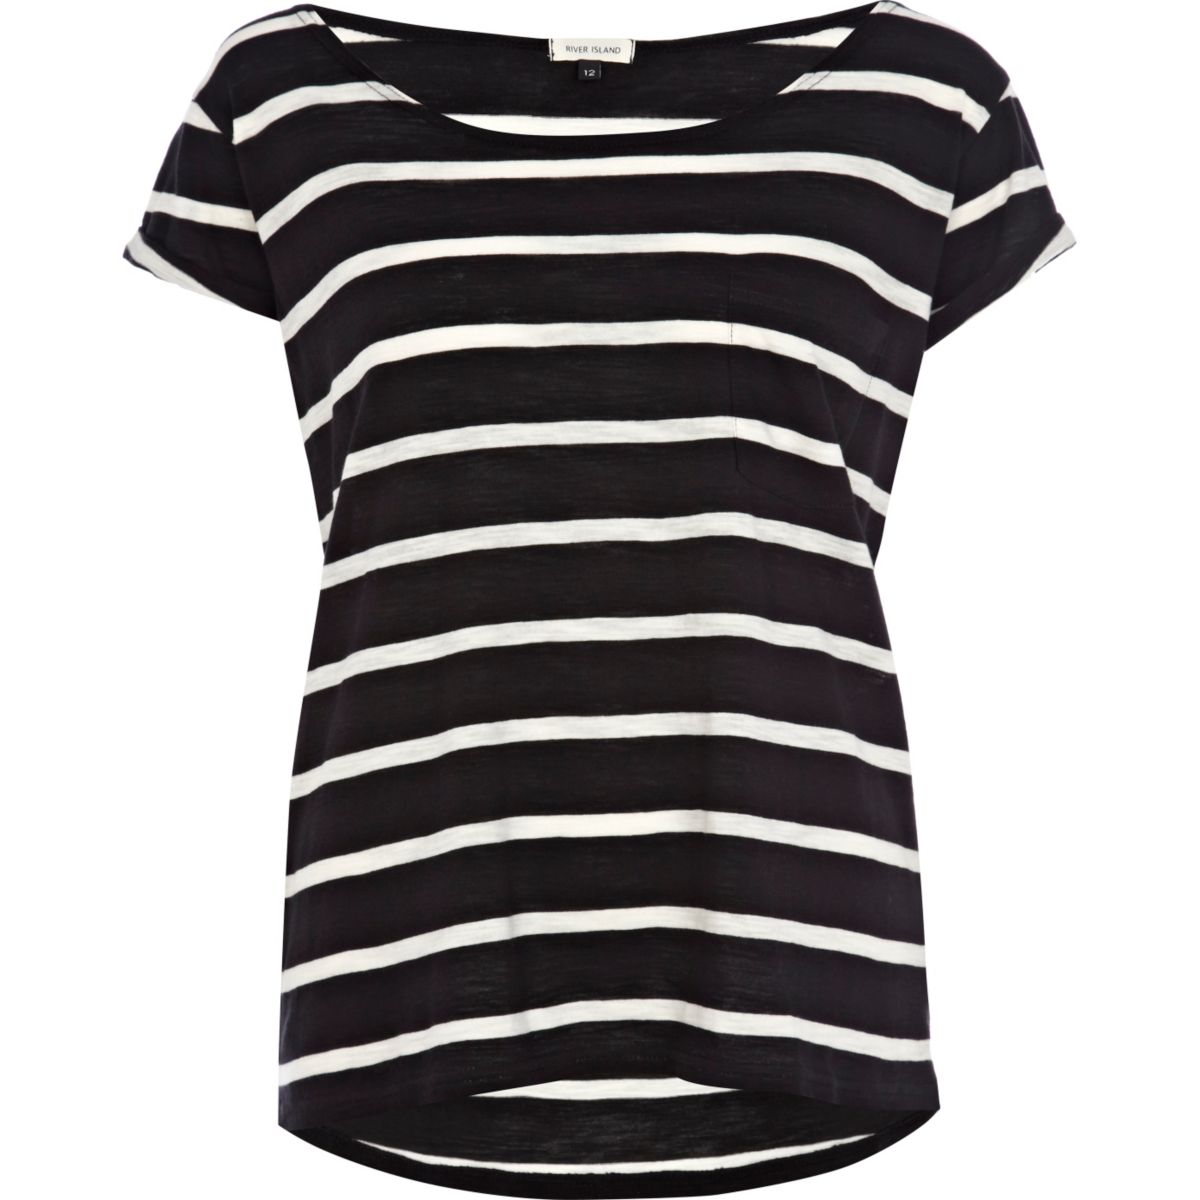 Black stripe boxy t-shirt - T-Shirts & Tanks - Sale - women